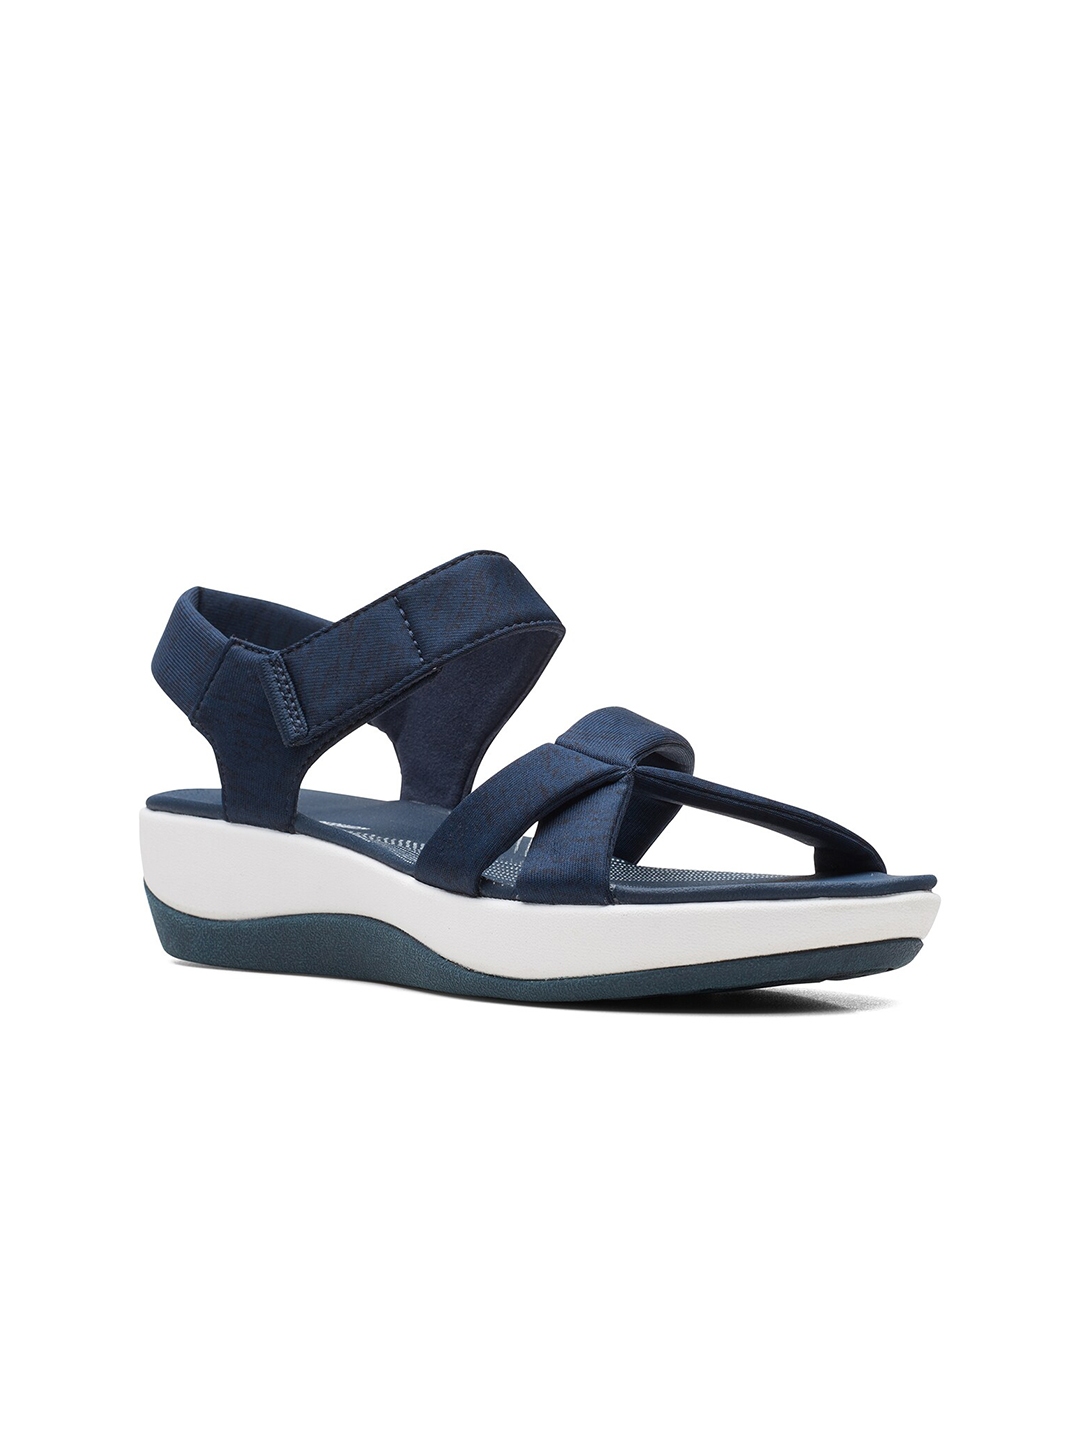 Buy Clarks Navy Blue Solid Wedge Heeled Sandals - Heels for Women ...